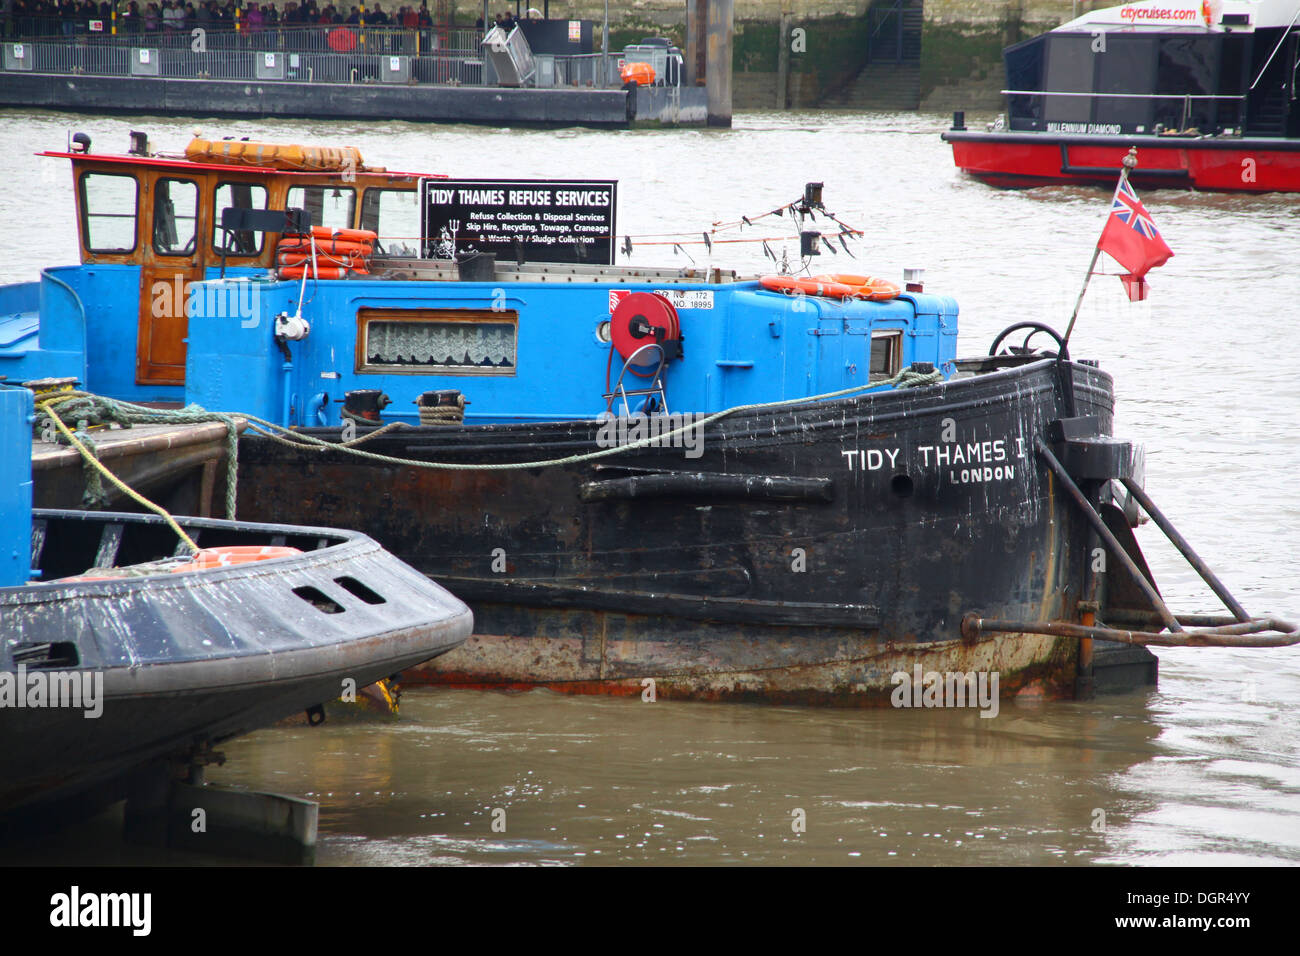 Thames Tidy 1 bateau de collecte des déchets Banque D'Images